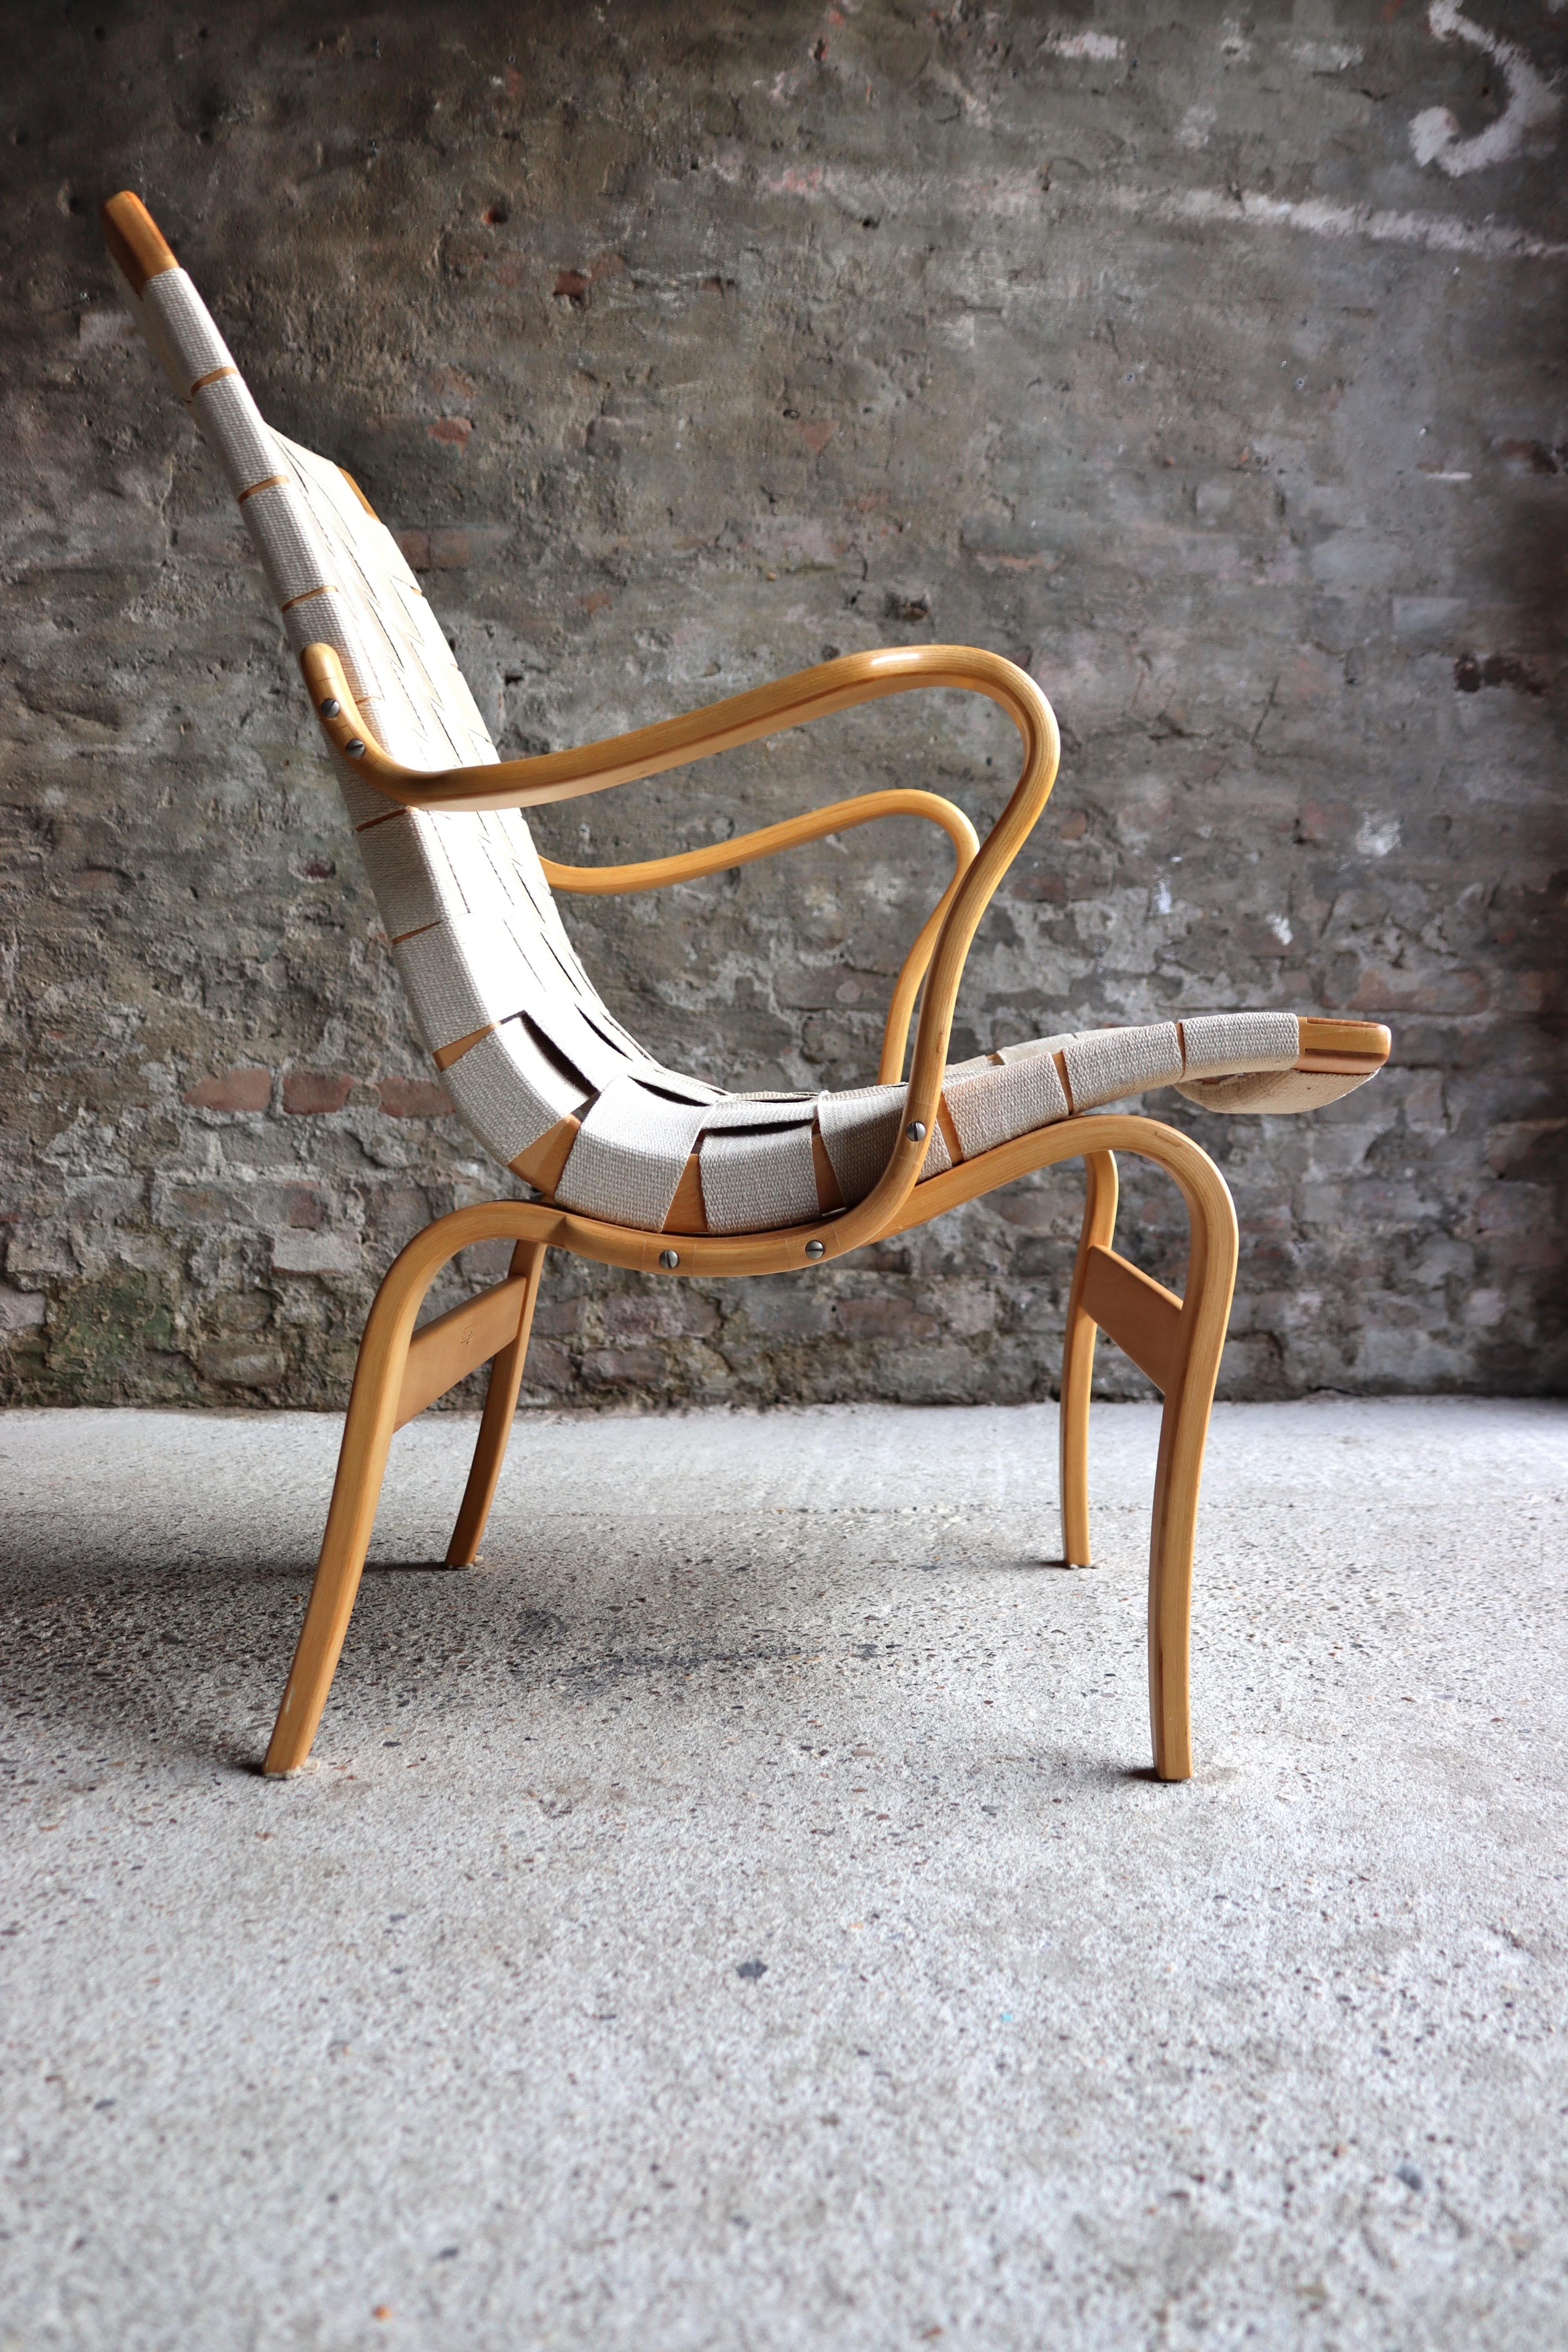 Mid-20th Century Bruno Mathsson – Eva Chair – Beech wood – Karl Matthson – Sweden – 1960s